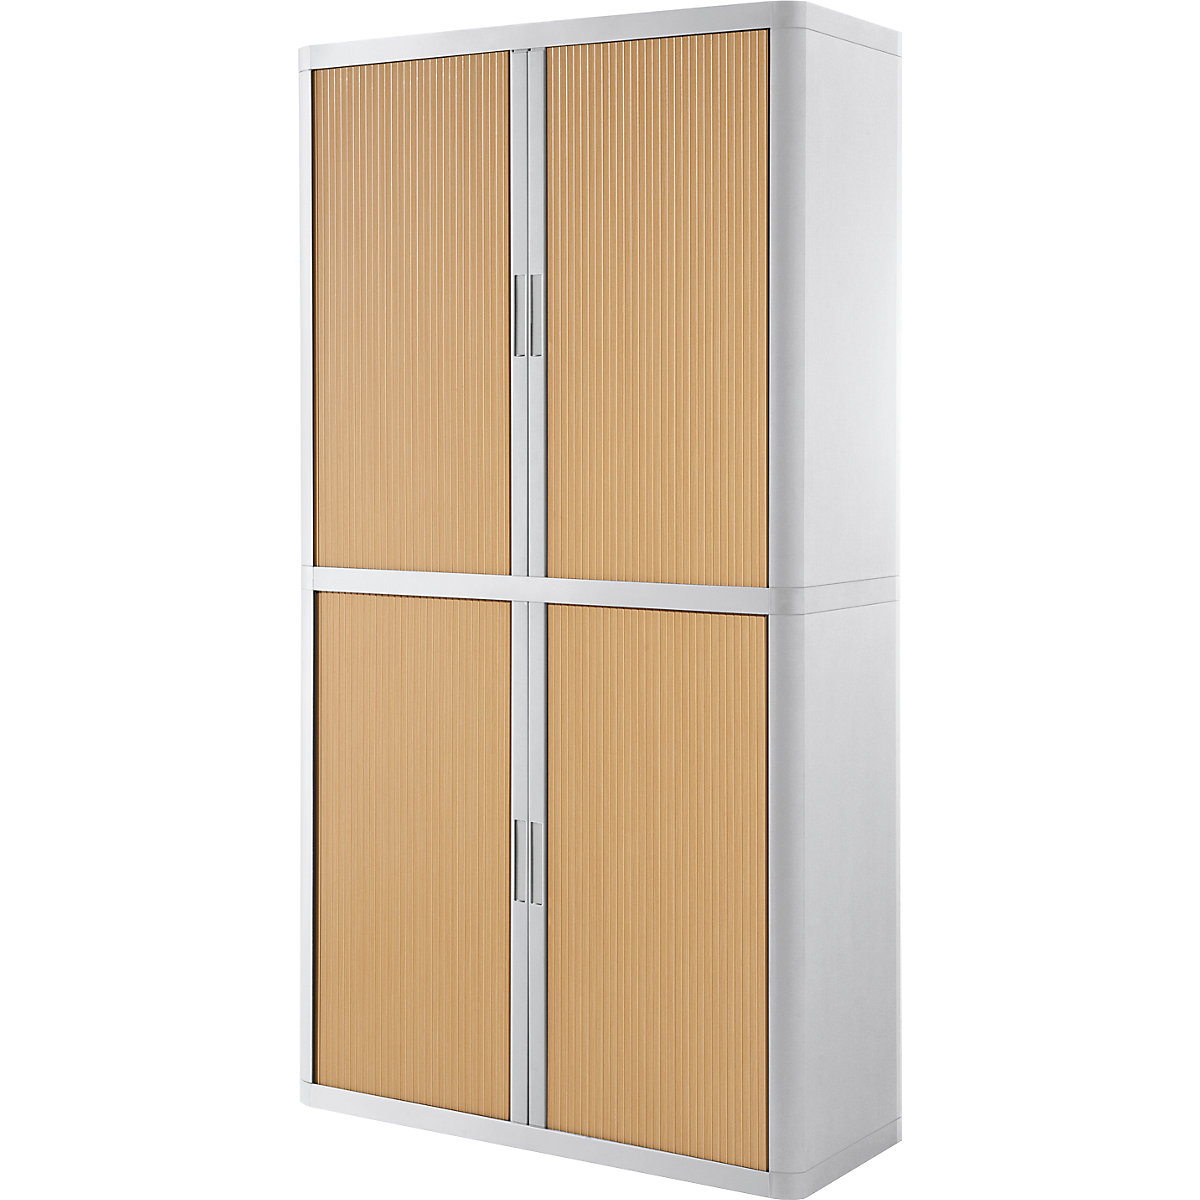 easyOffice® roller shutter cupboard – Paperflow